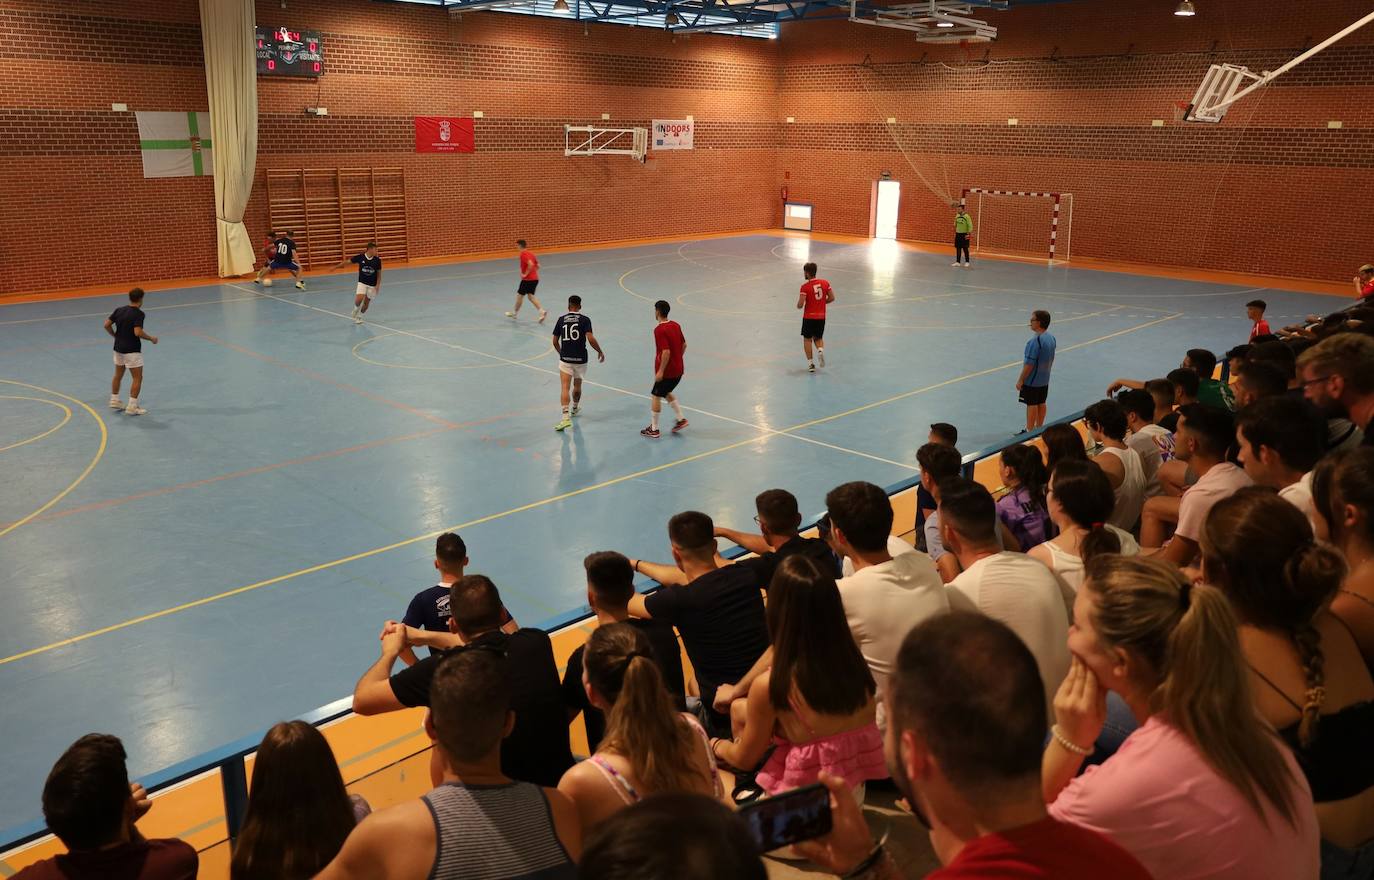 Este fin de semana se ha celebrado el 24 horas de Futbol Sala en Herrera del Duque